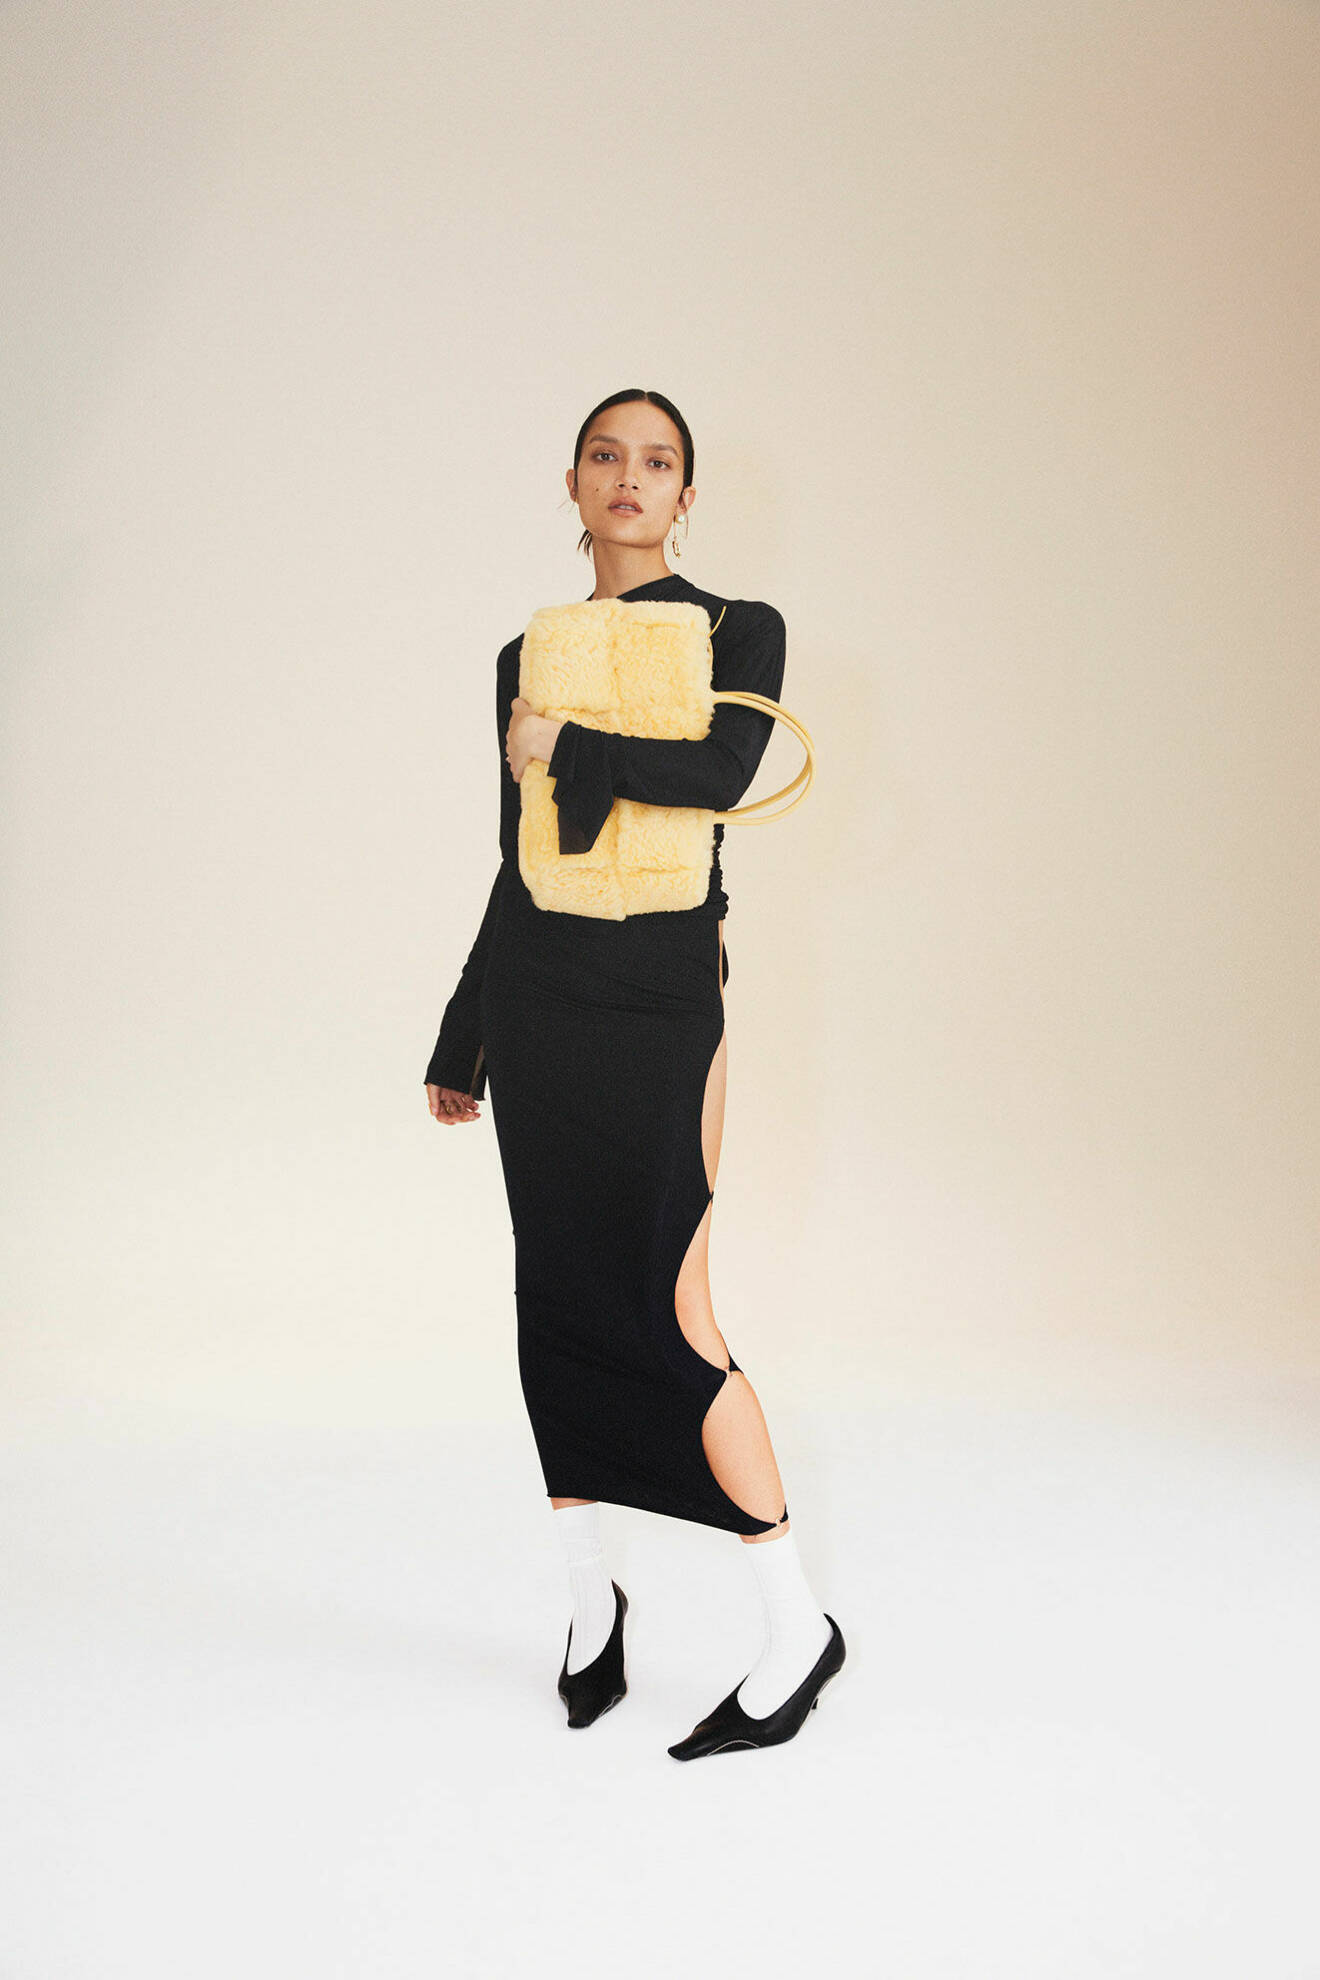 Modellen har på sig svart topp och svart kjol från Jade Cropper, hon bär på en gul väska från Bottega Veneta